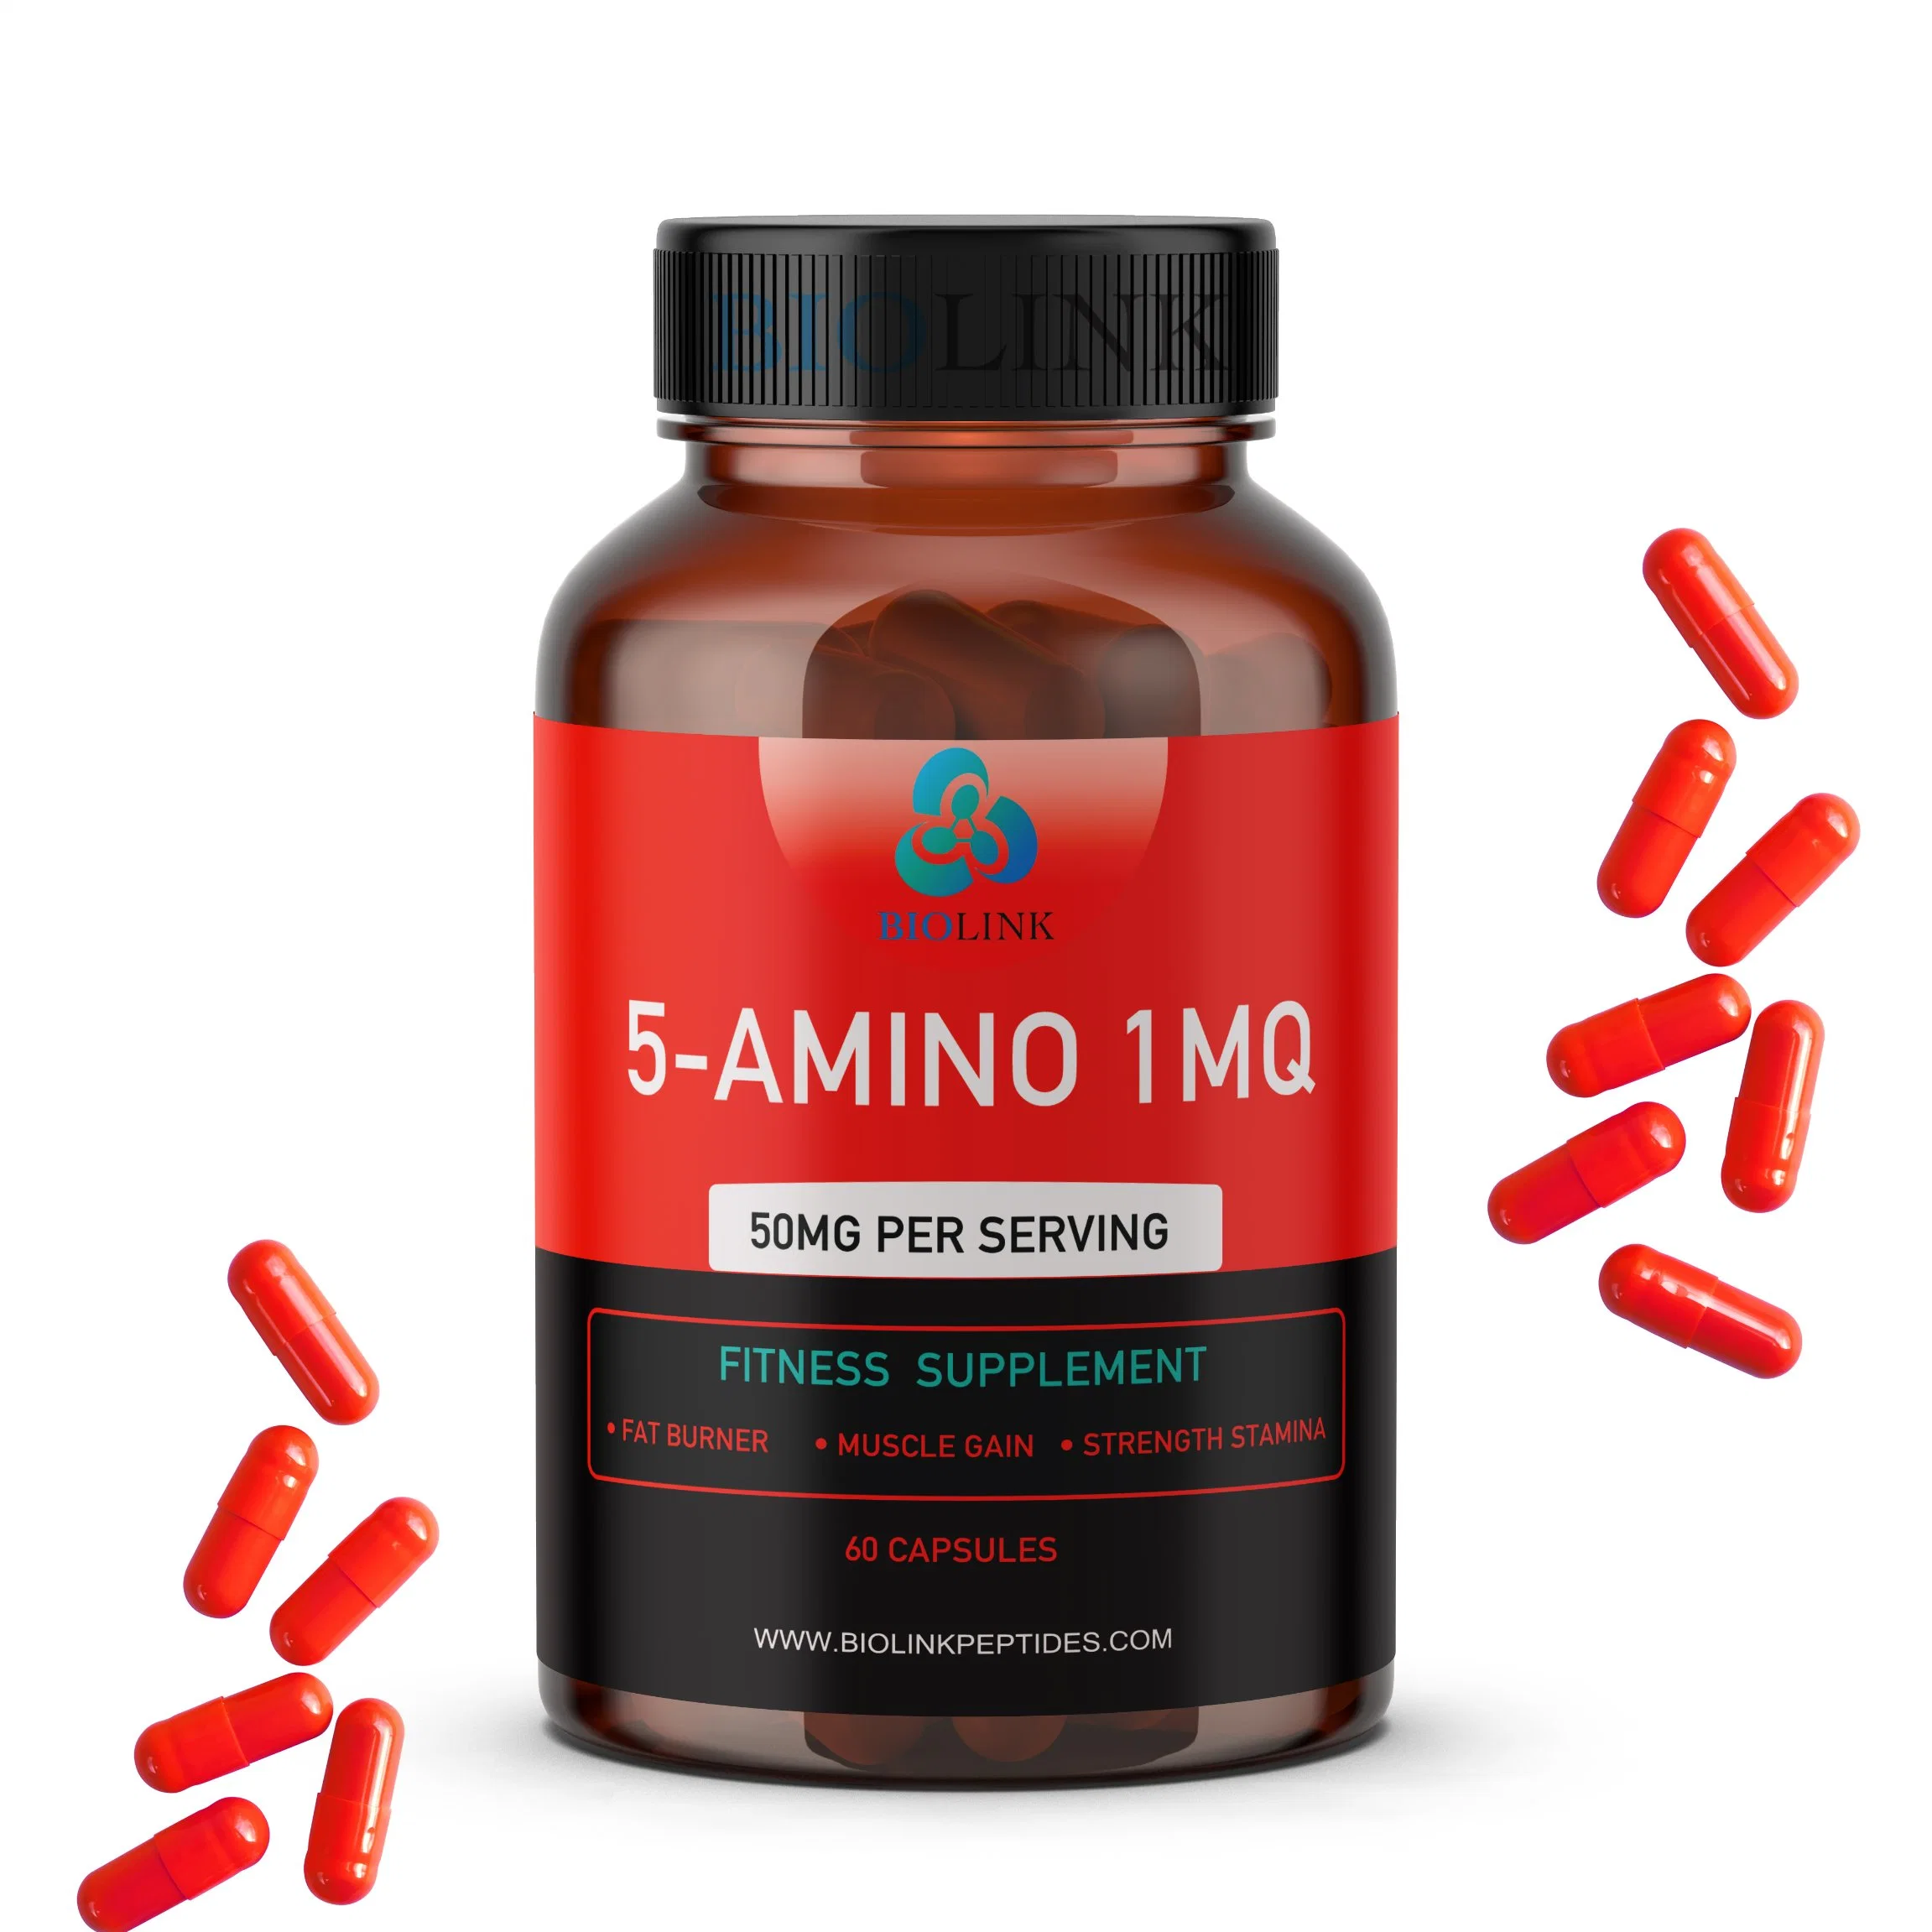 Acheter une perte de poids peptides par voie orale 5-Amino 1MQ USA Stock d'appoint d'énergie CEMFA : 42464-96-0